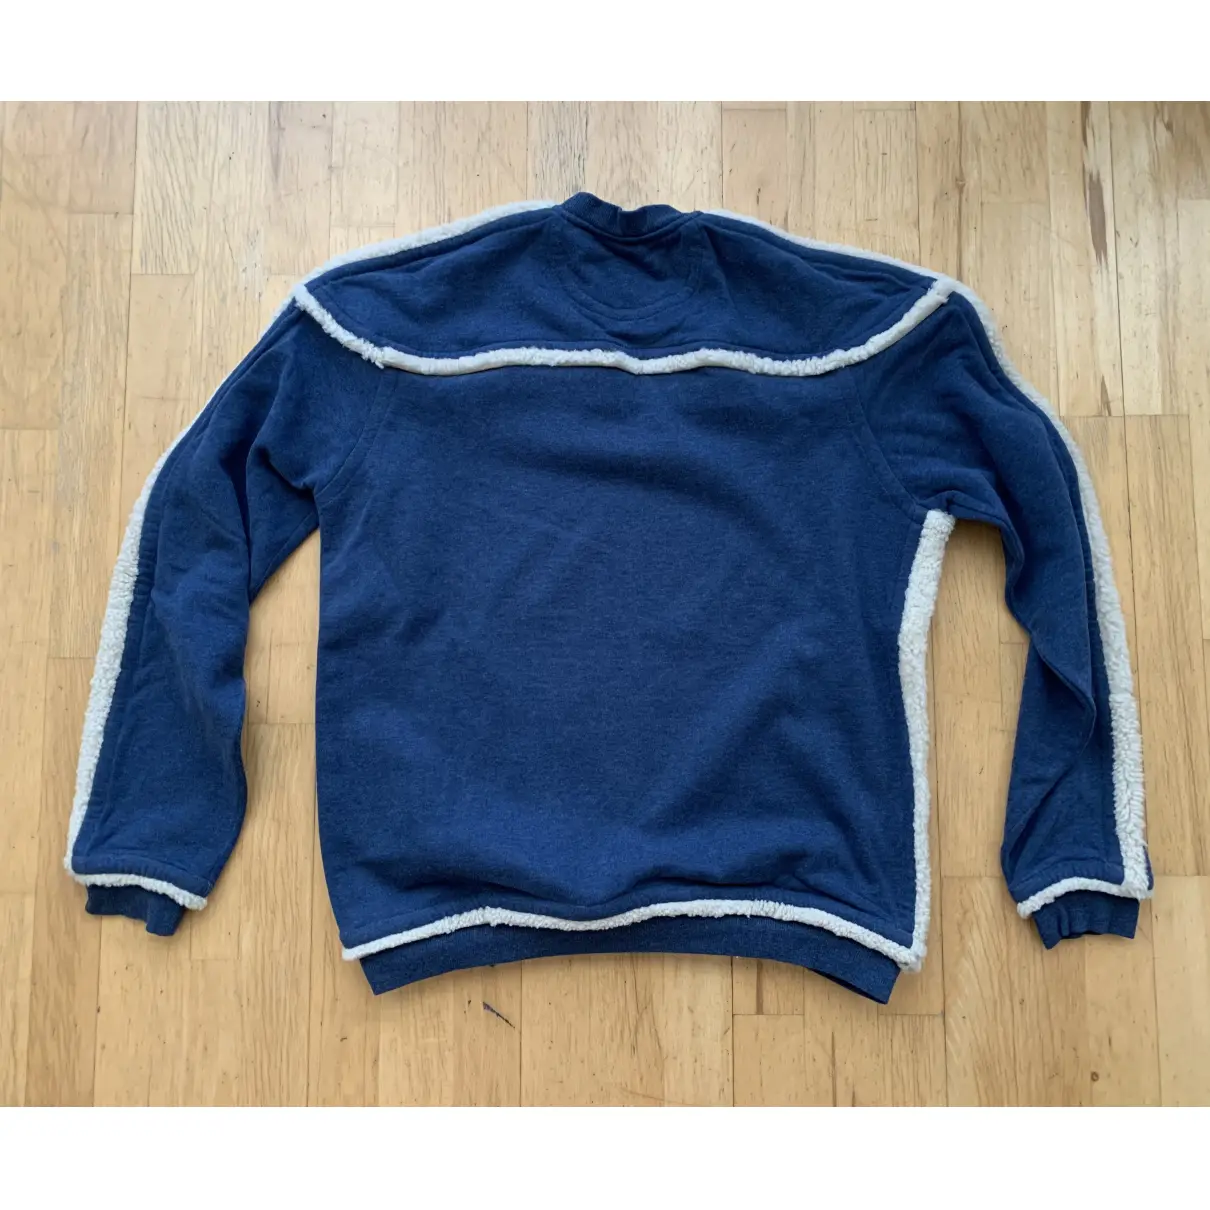 Buy Burberry Sweatshirt online